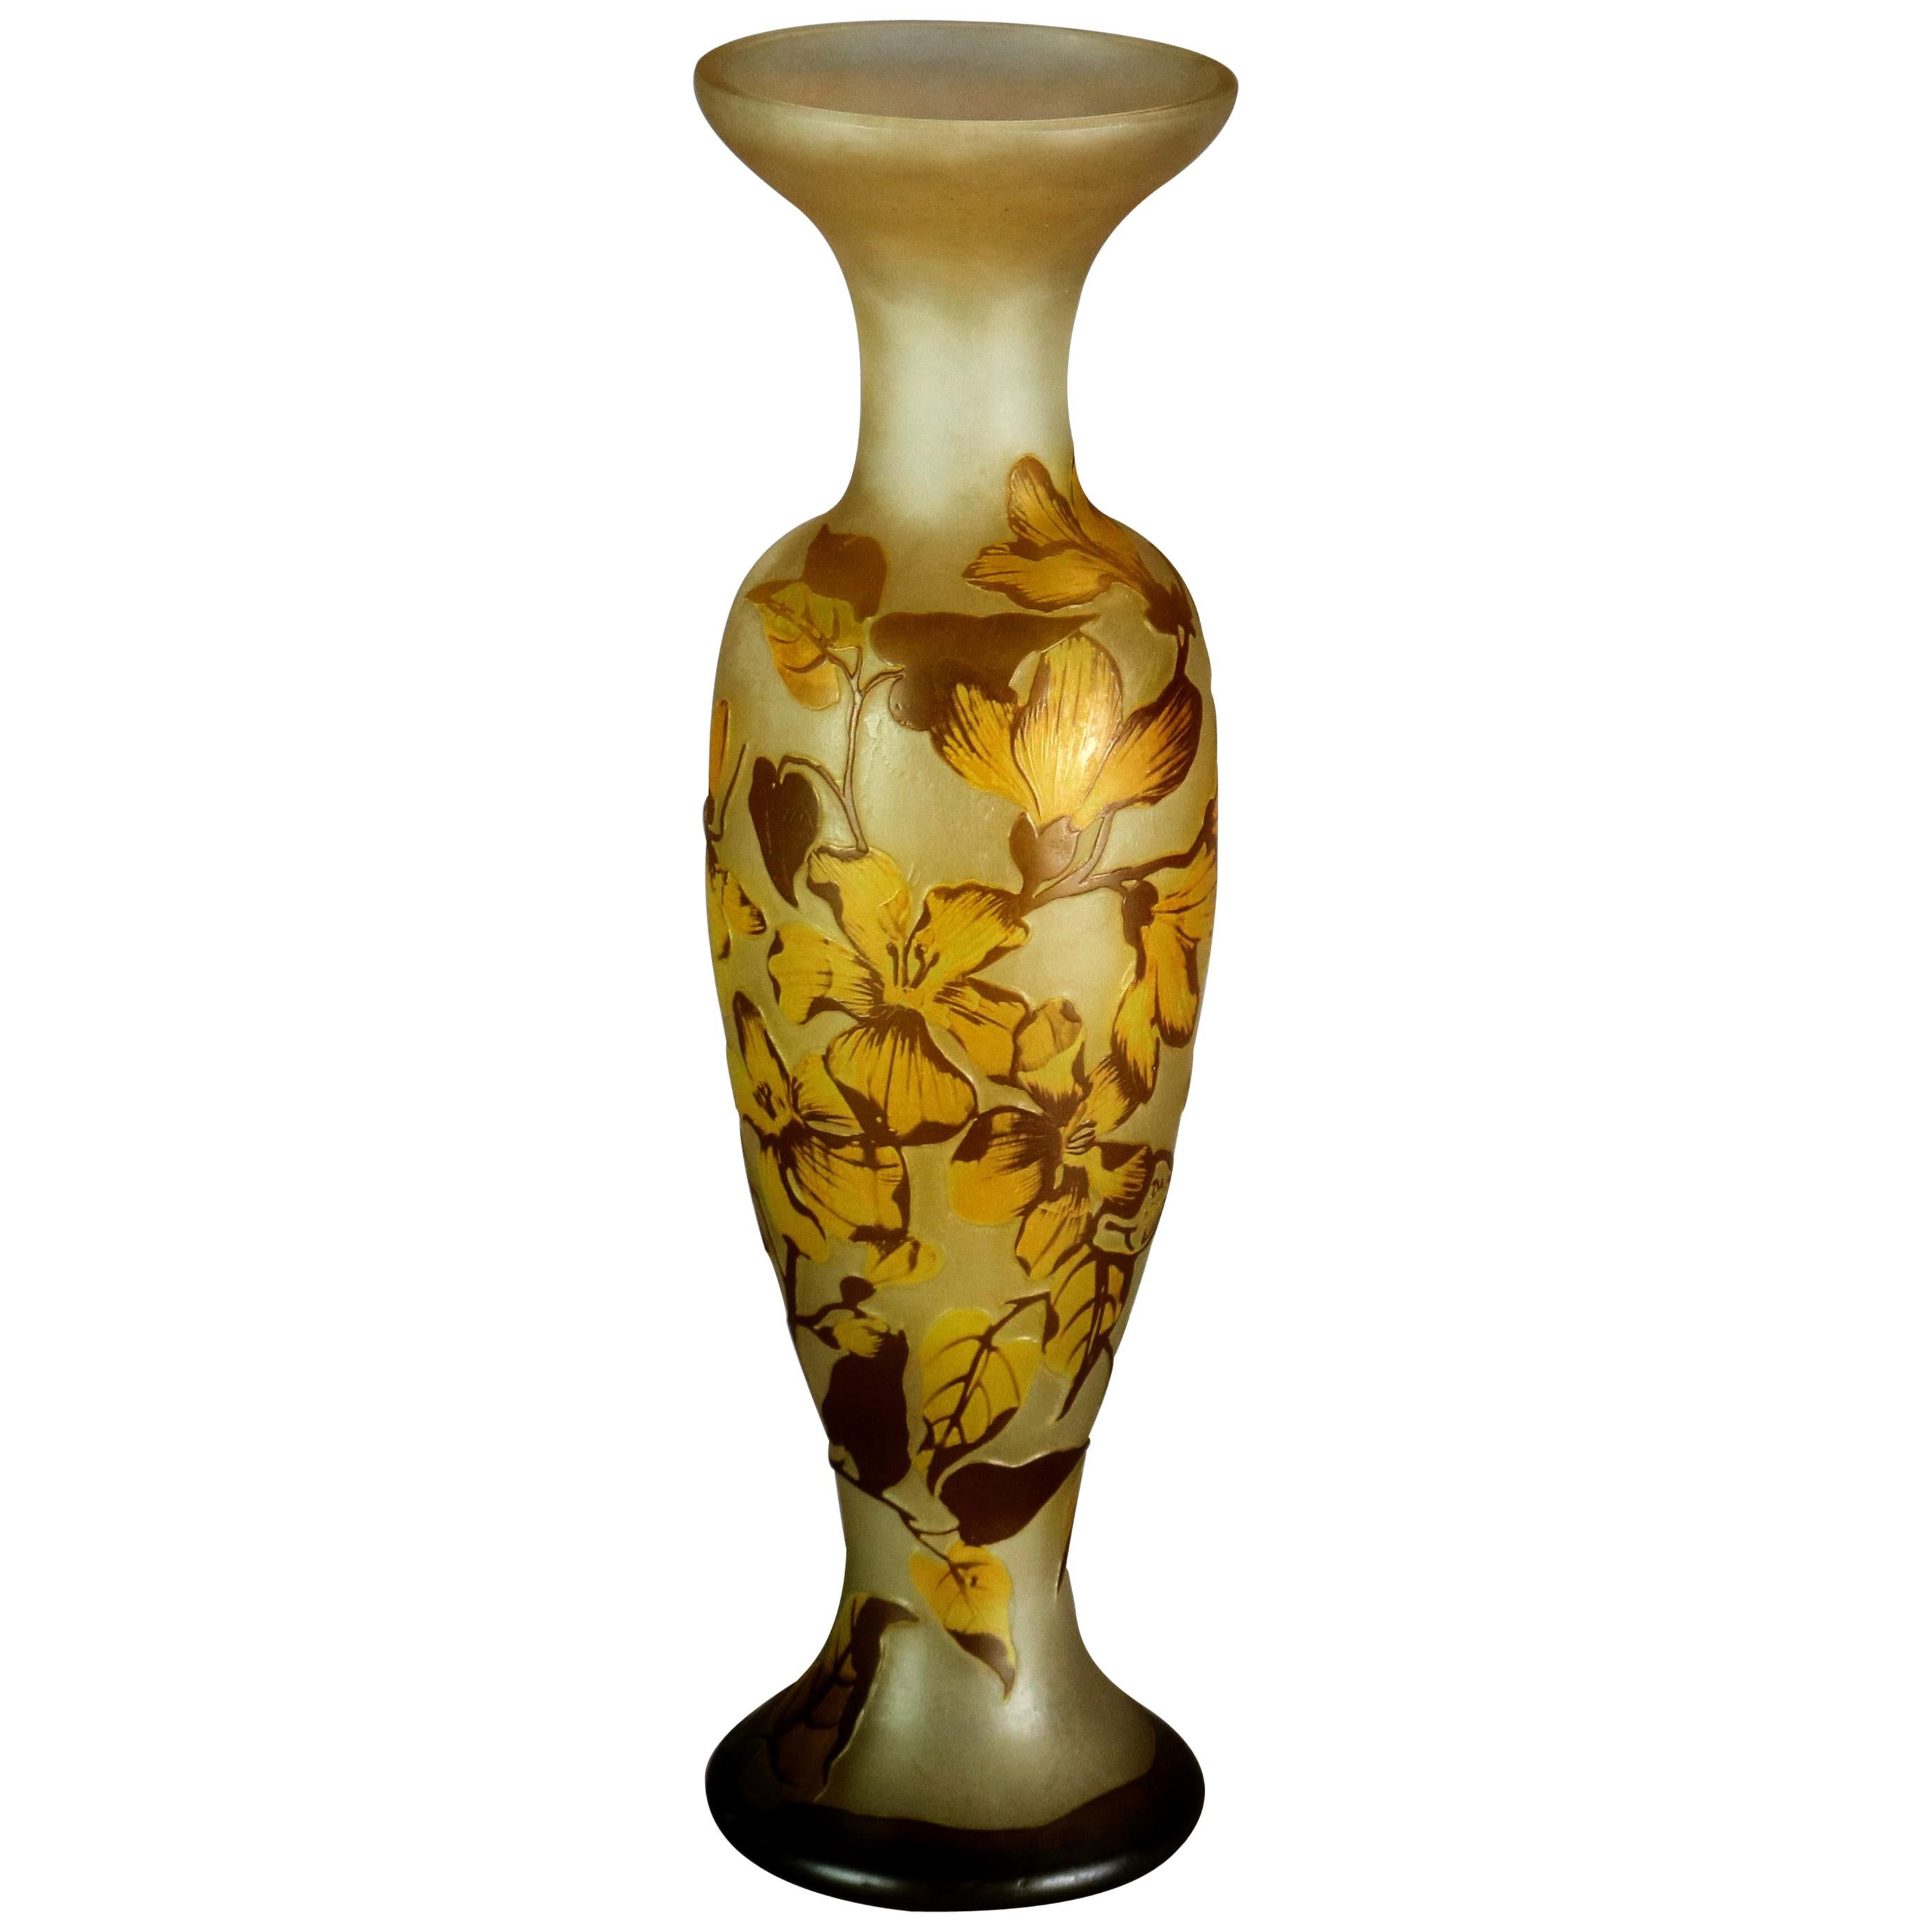 Antique French Art Nouveau Daum Nancy Cameo Cut Back Art Glass Vase, c1900